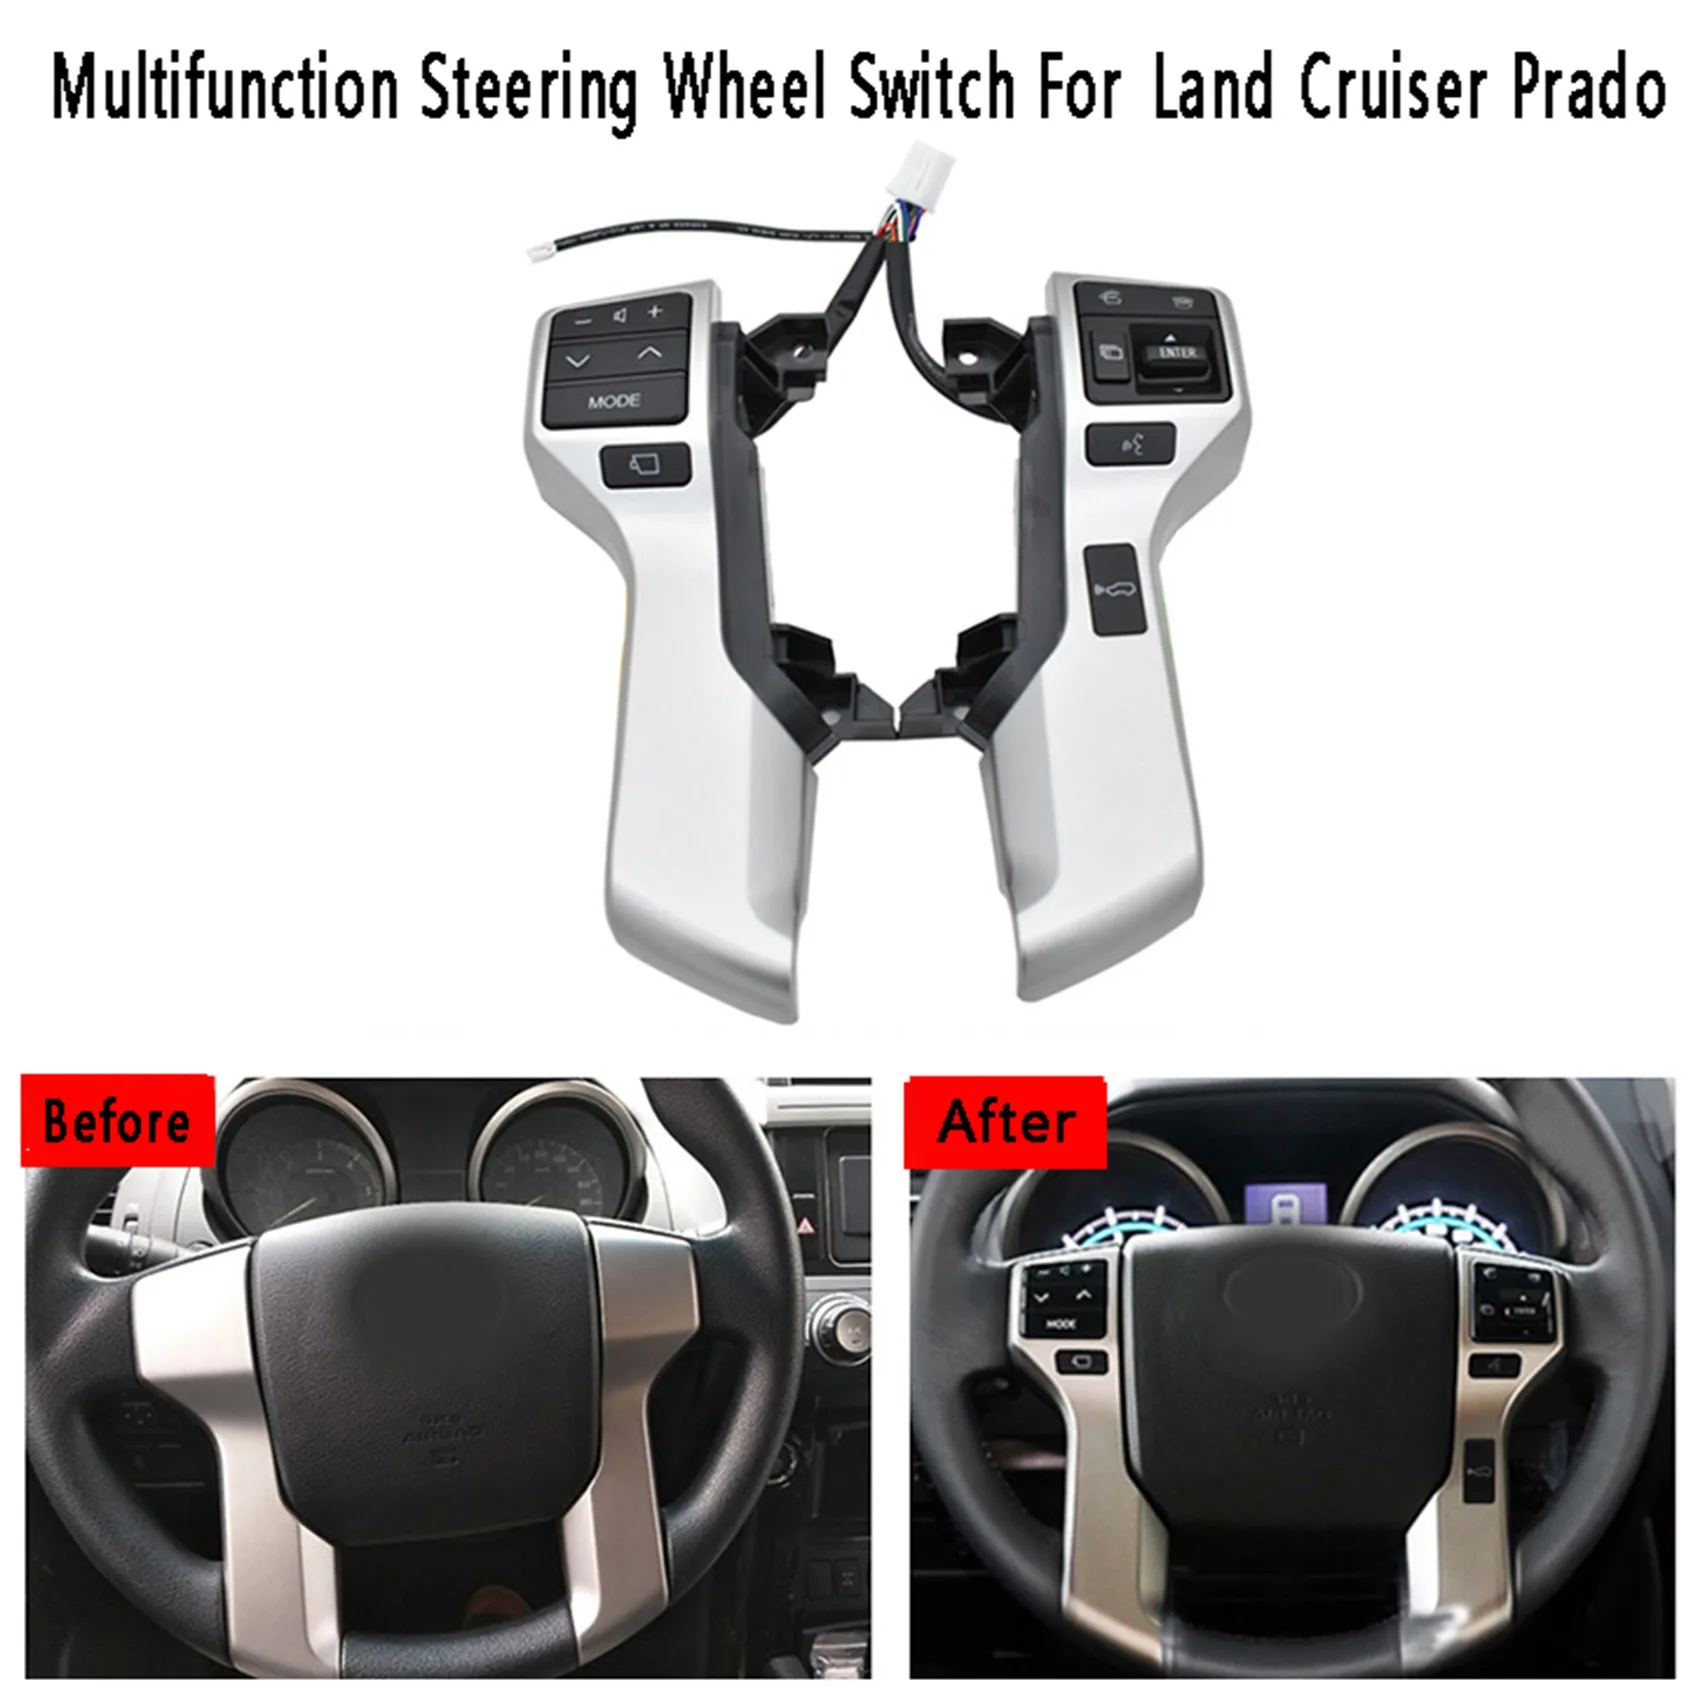 

Многофункциональный переключатель управления на руль, кнопка управления аудио 8425060180 для Toyota Land Cruiser Prado, серебристый